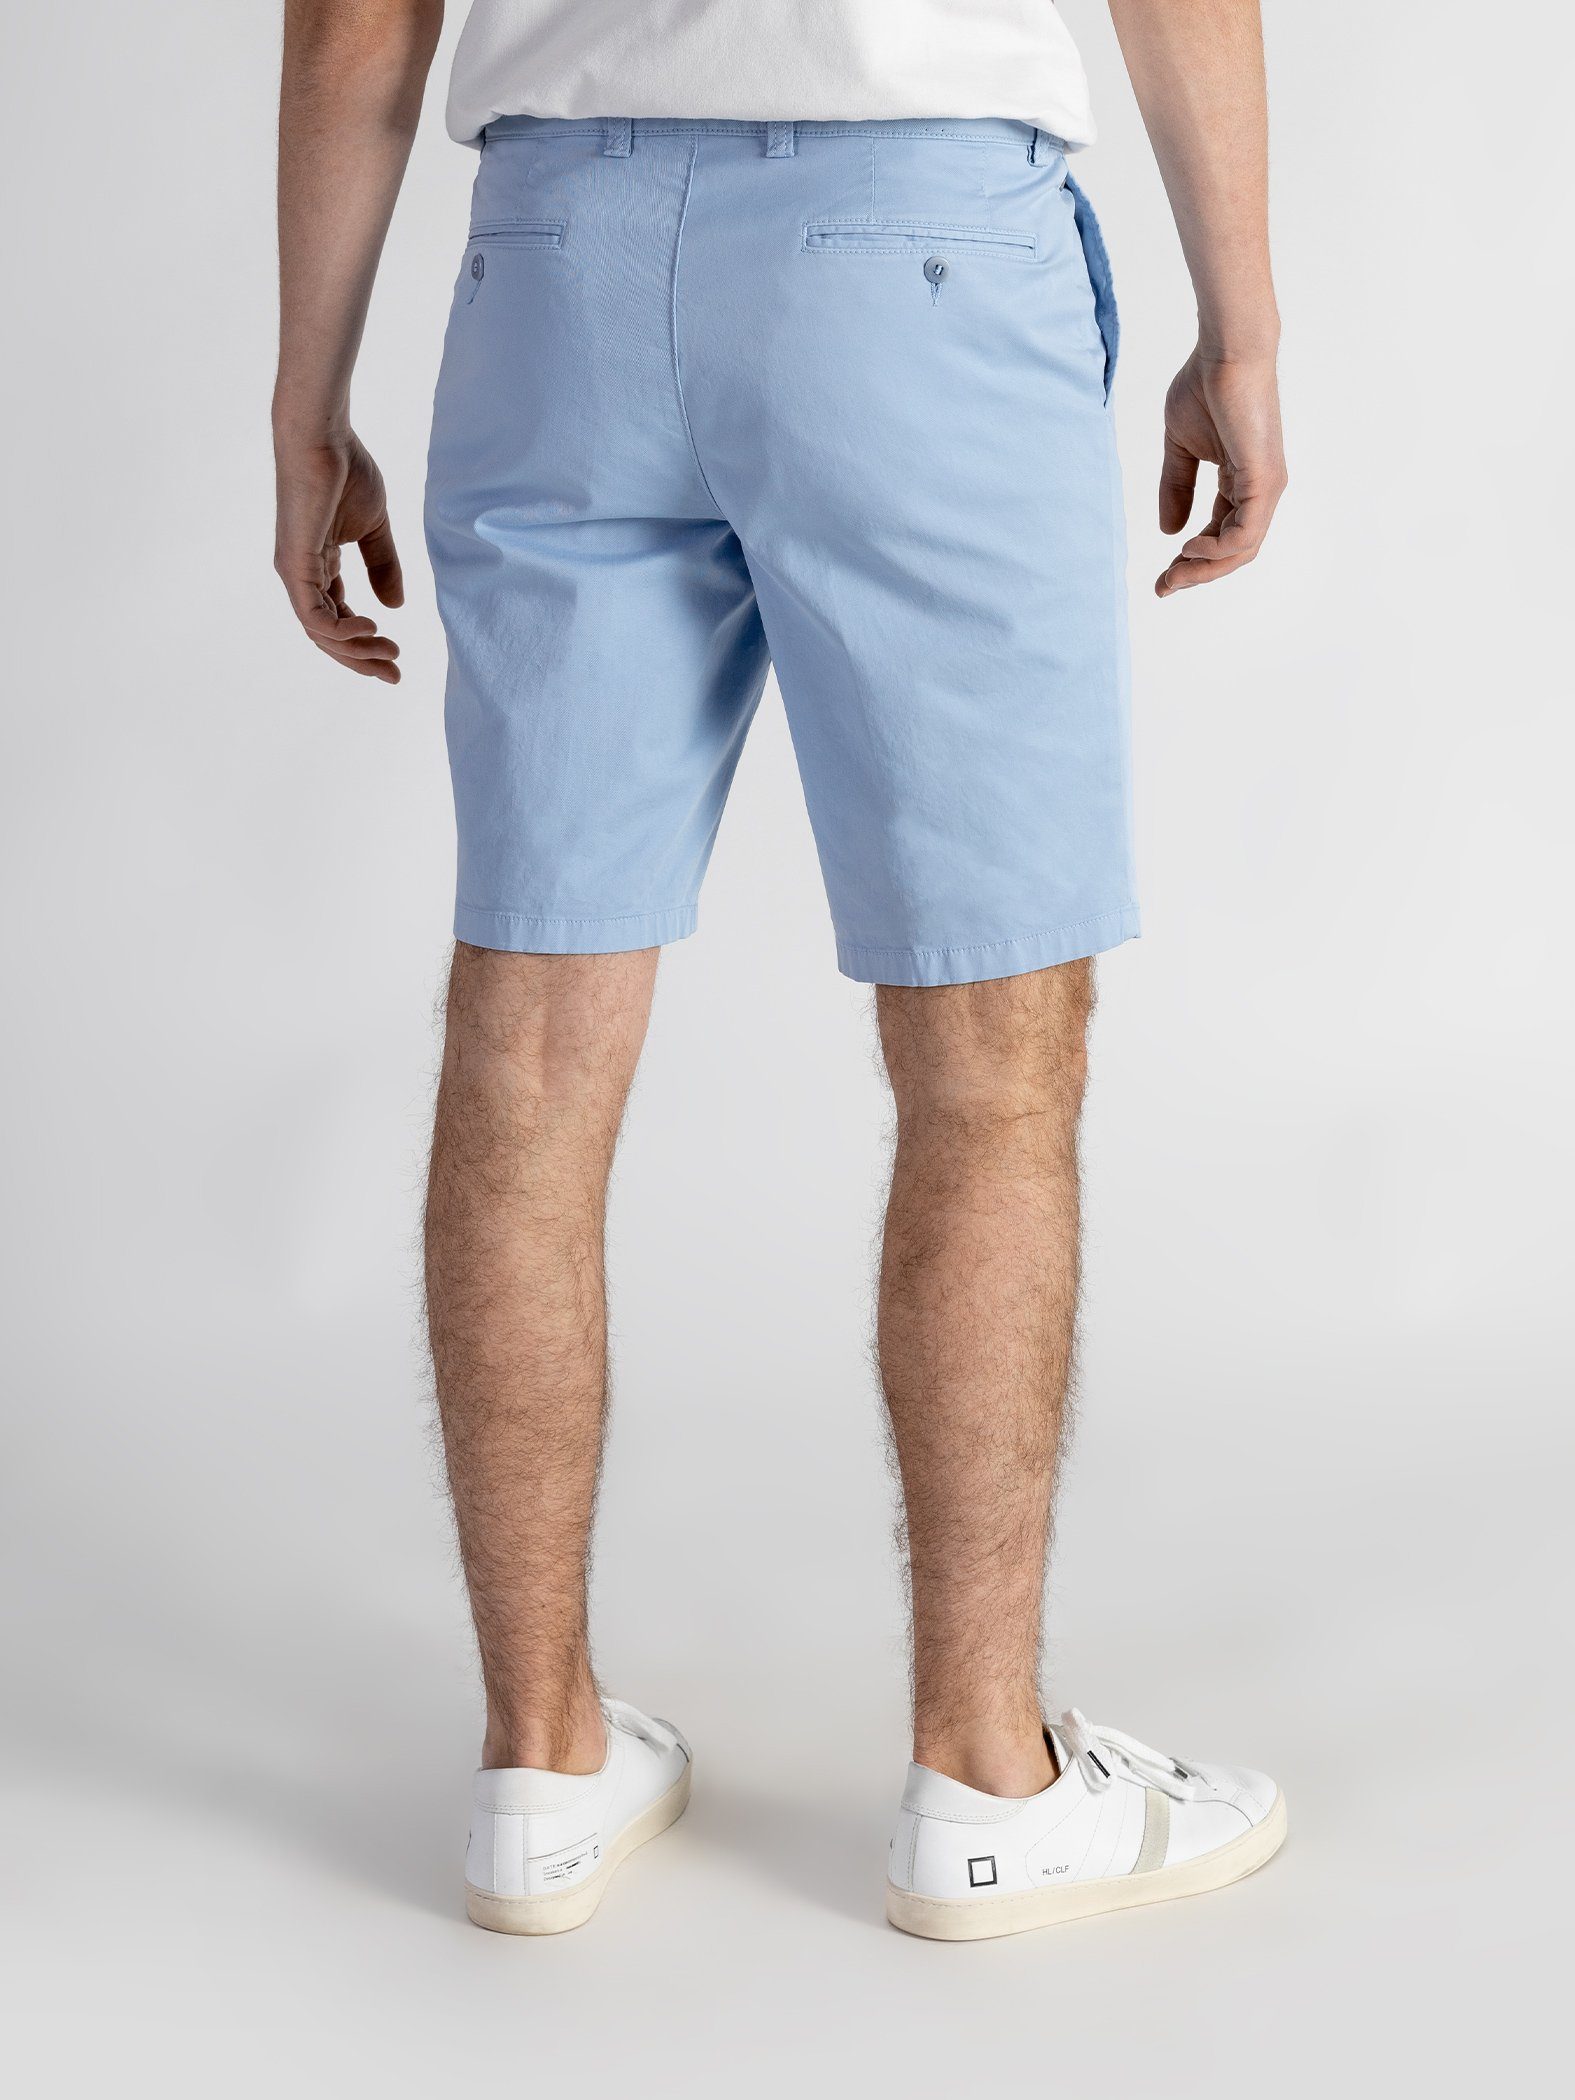 TwoMates Shorts Shorts mit elastischem Farbauswahl, Bund, GOTS-zertifiziert hellblau